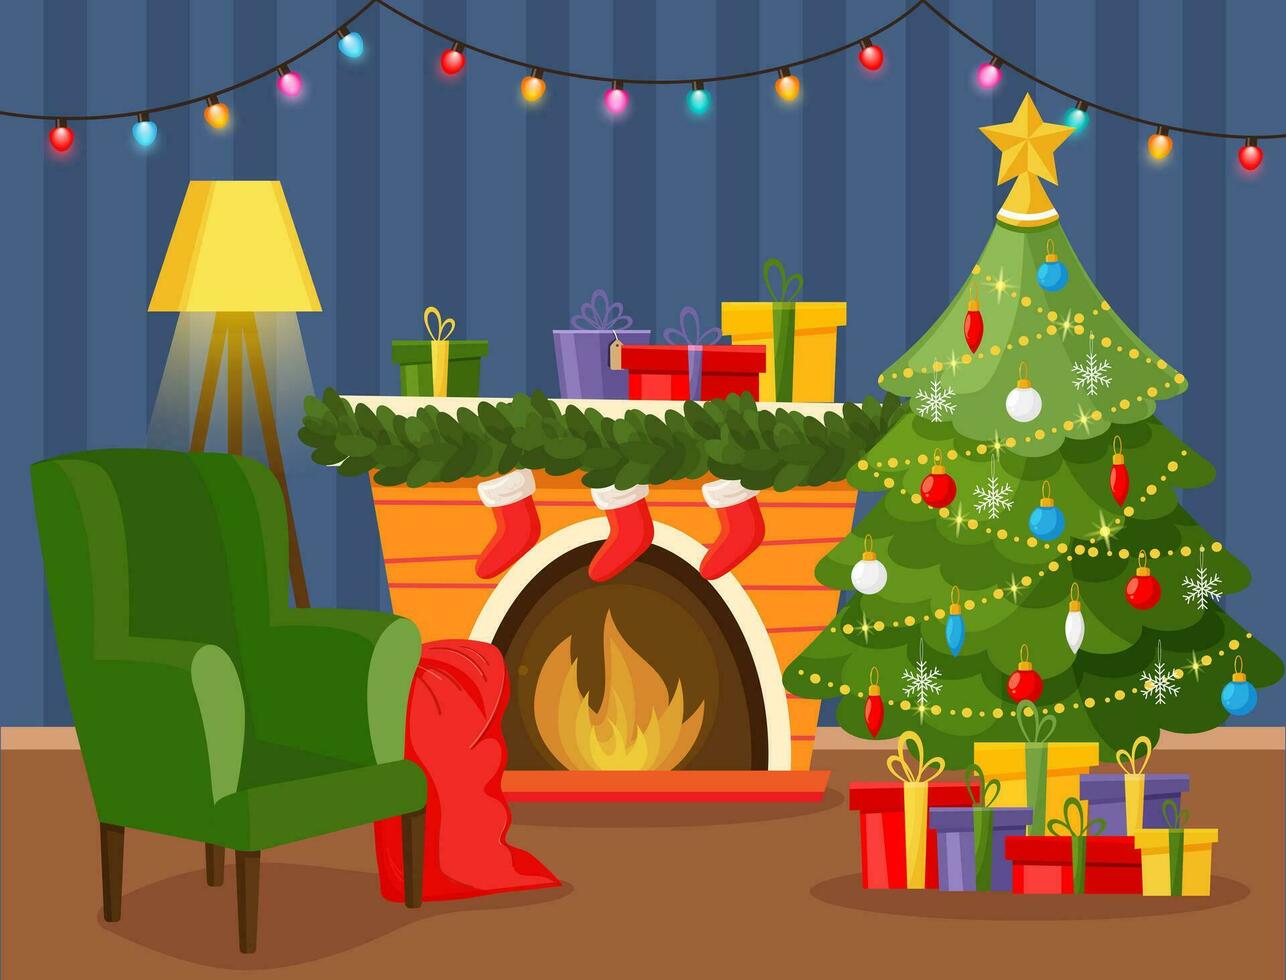 Noël vivant pièce intérieur avec Noël arbre, chaise, cadeaux, lampe, cheminée, guirlande, lumières. vecteur illustration dans moderne plat style.